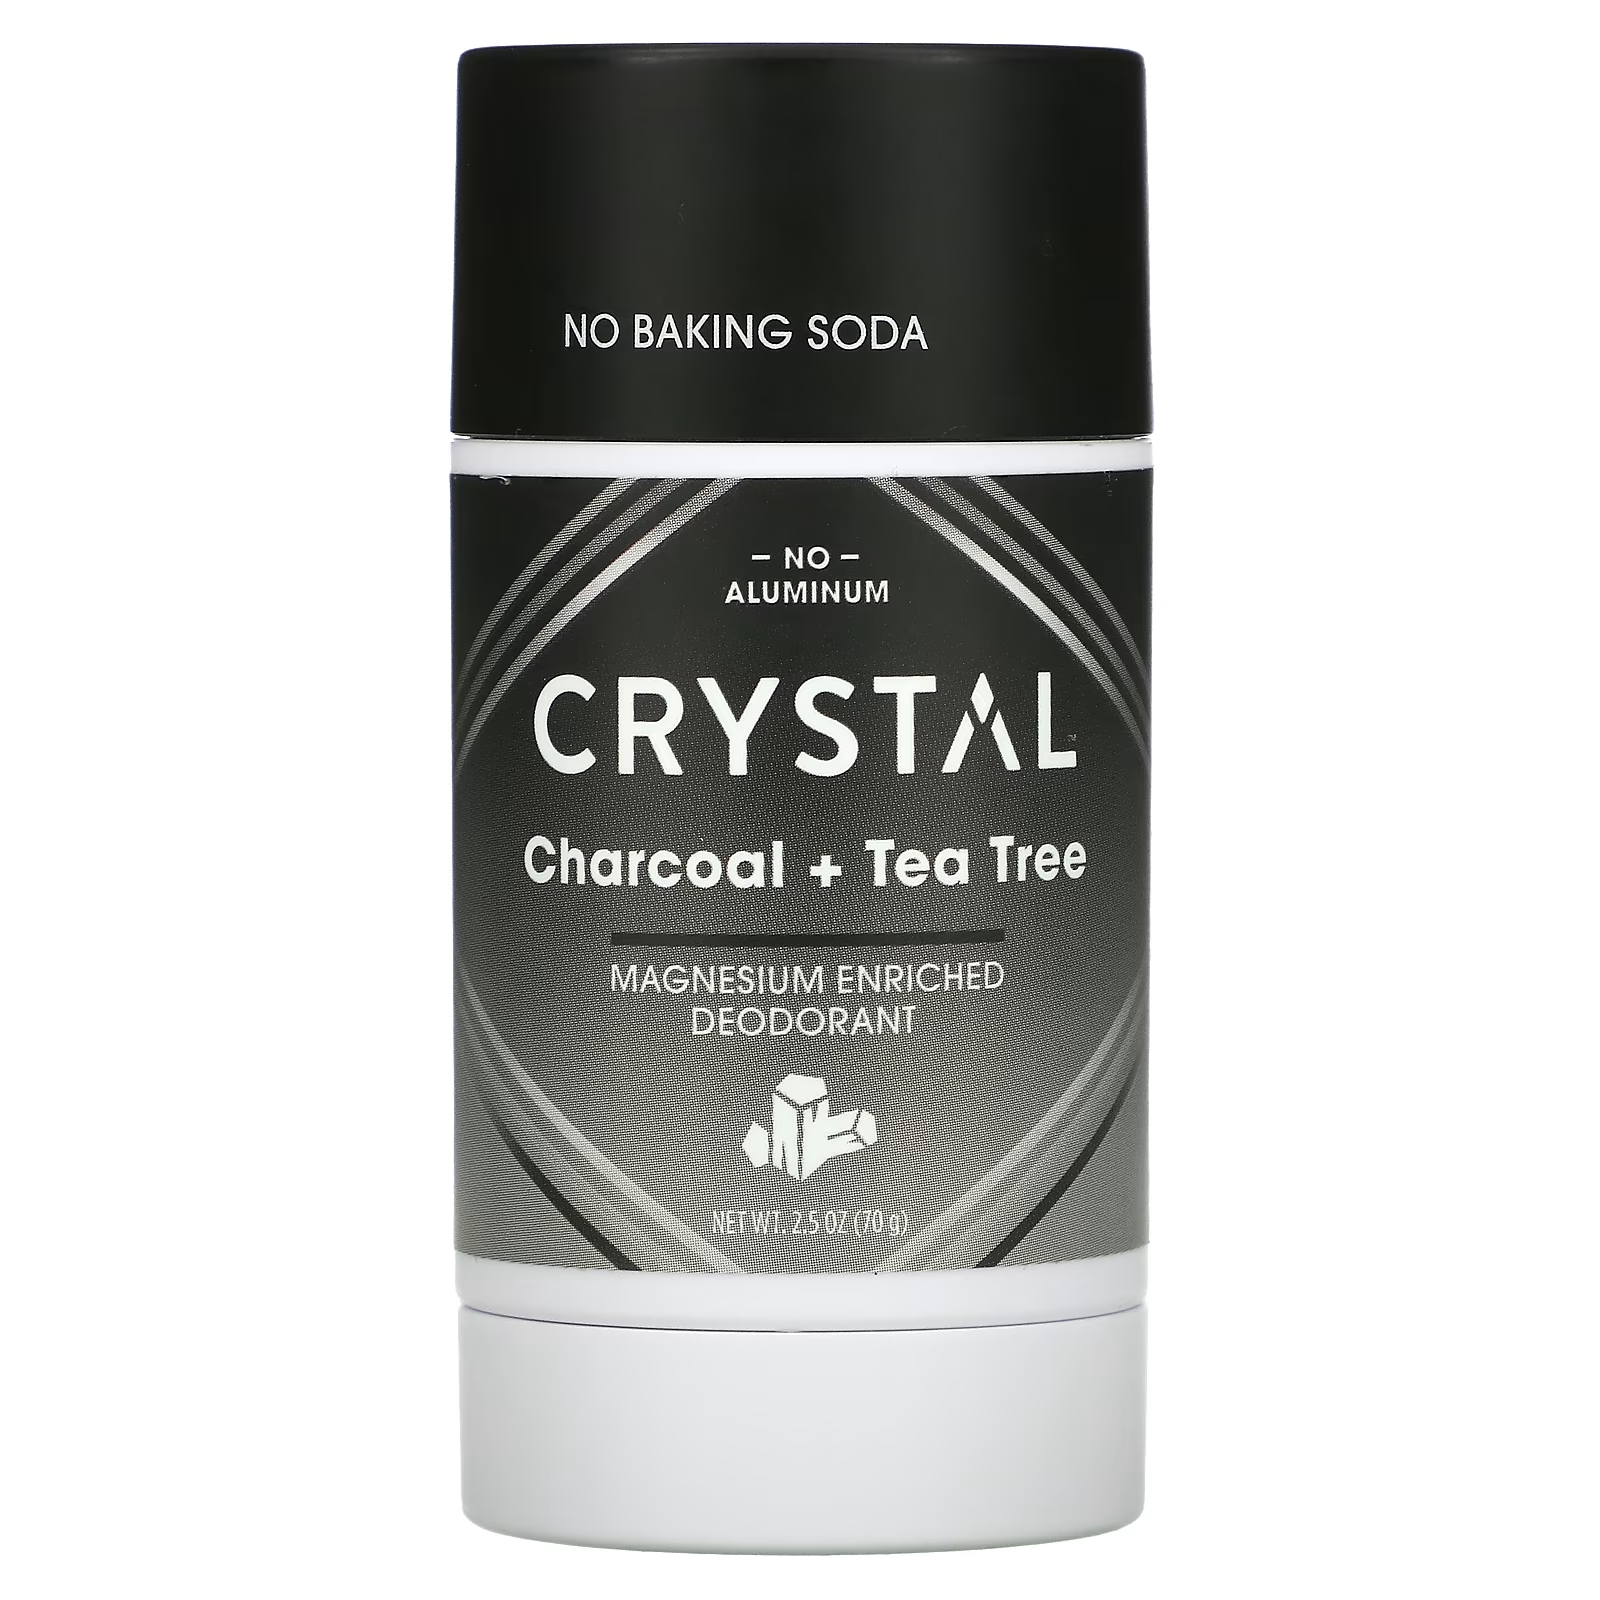 Дезодорант Crystal обогащенный магнием, уголь + чайное дерево crystal обогащенный магнием дезодорант легкий и мягкий 70 г 2 5 унции